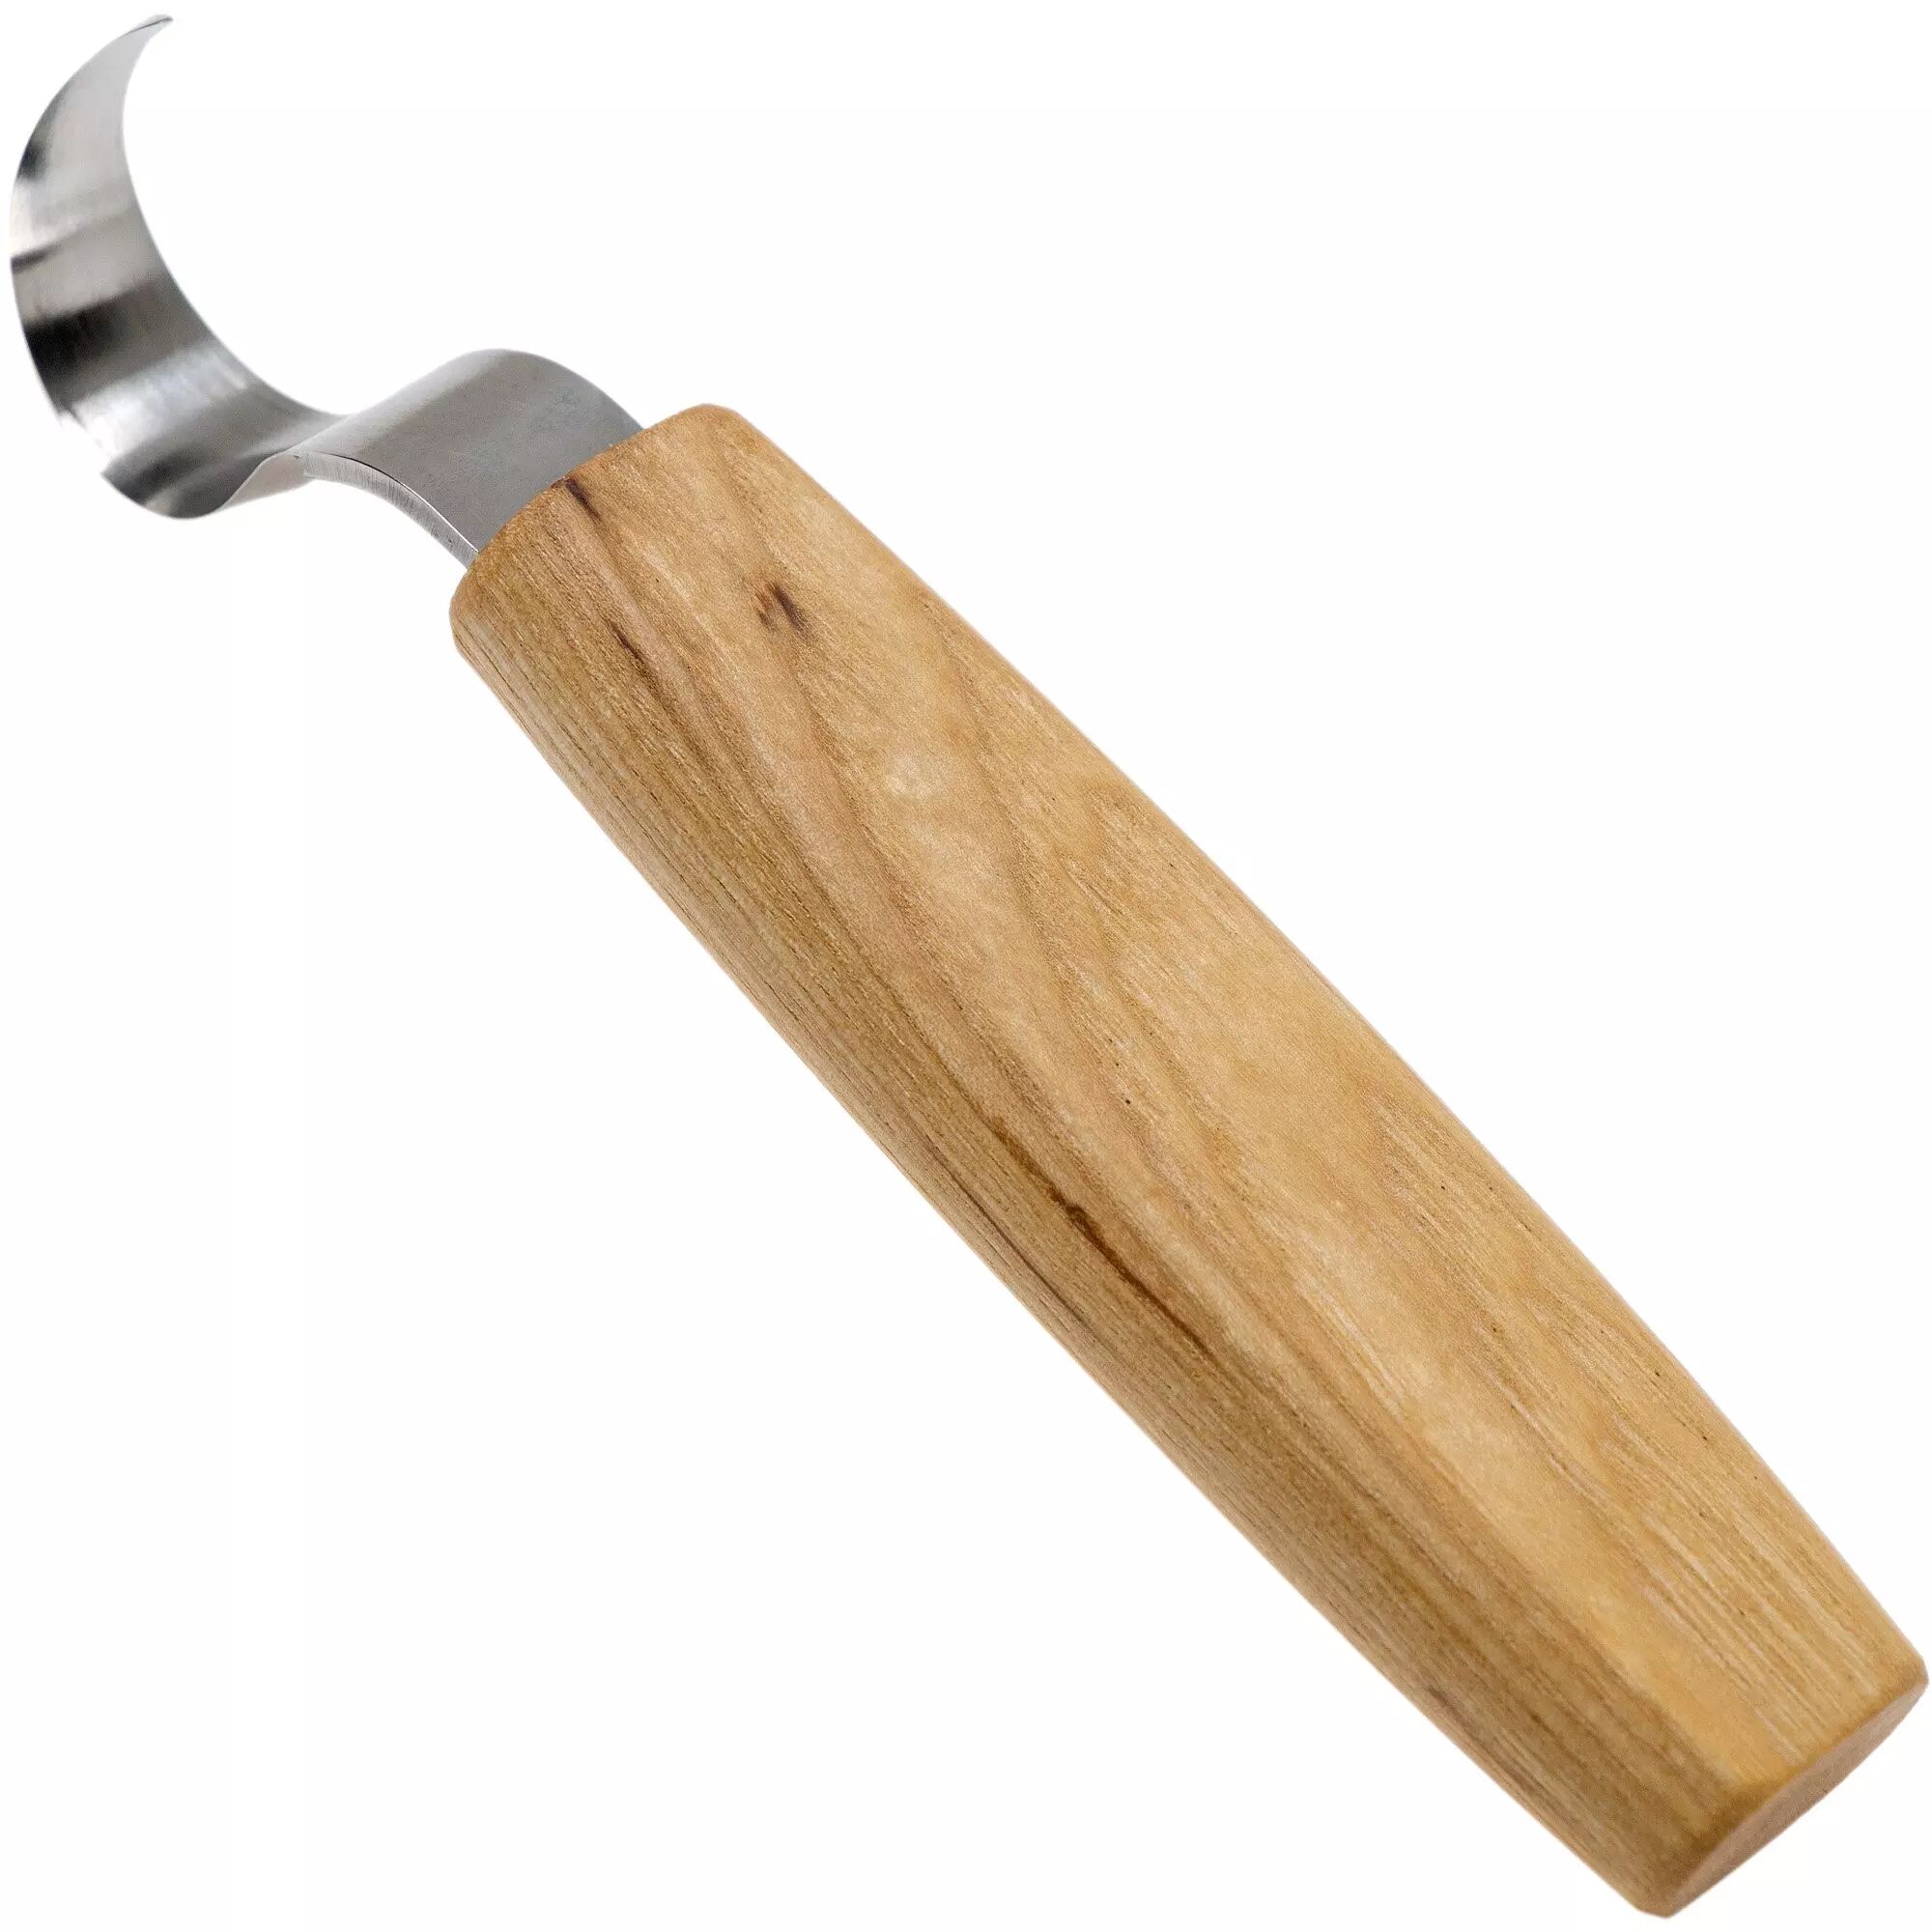 BeaverCraft Spoon Carving Knife 25 mm SK1, Löffelmesser für Rechtshänder